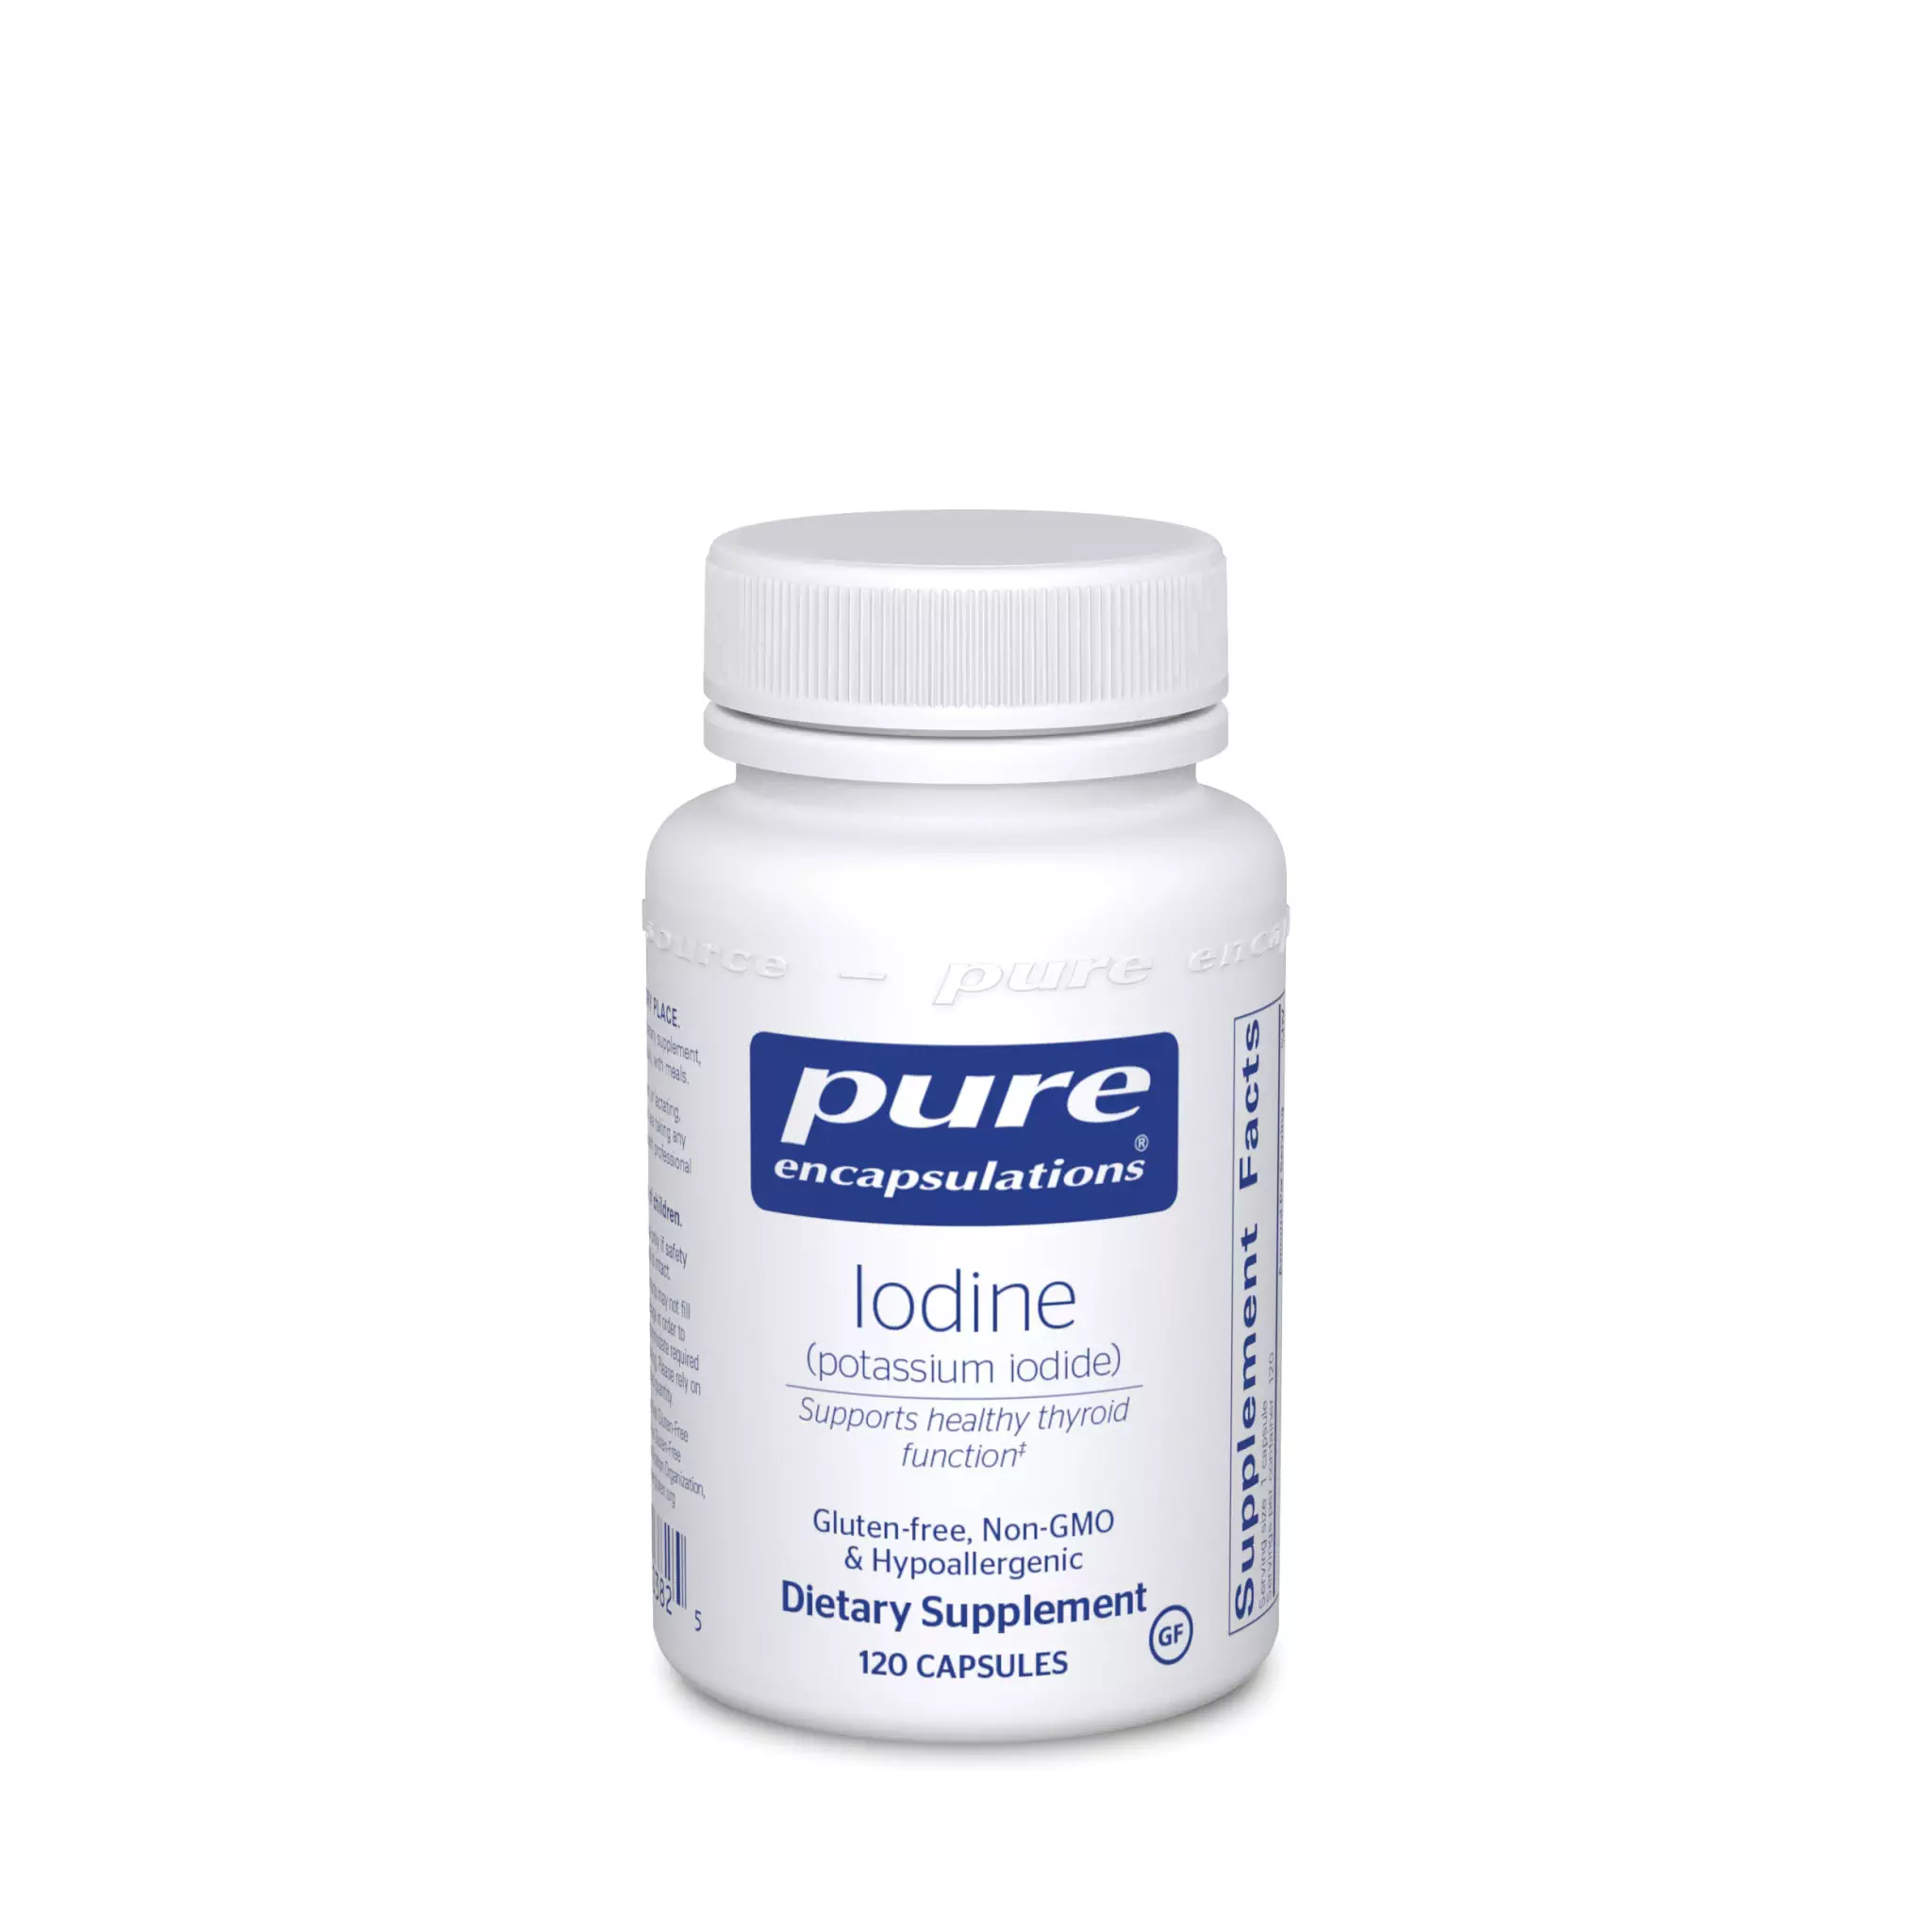 Pure Encapsulations - Iodine 225 mcg (Pot Iodide)